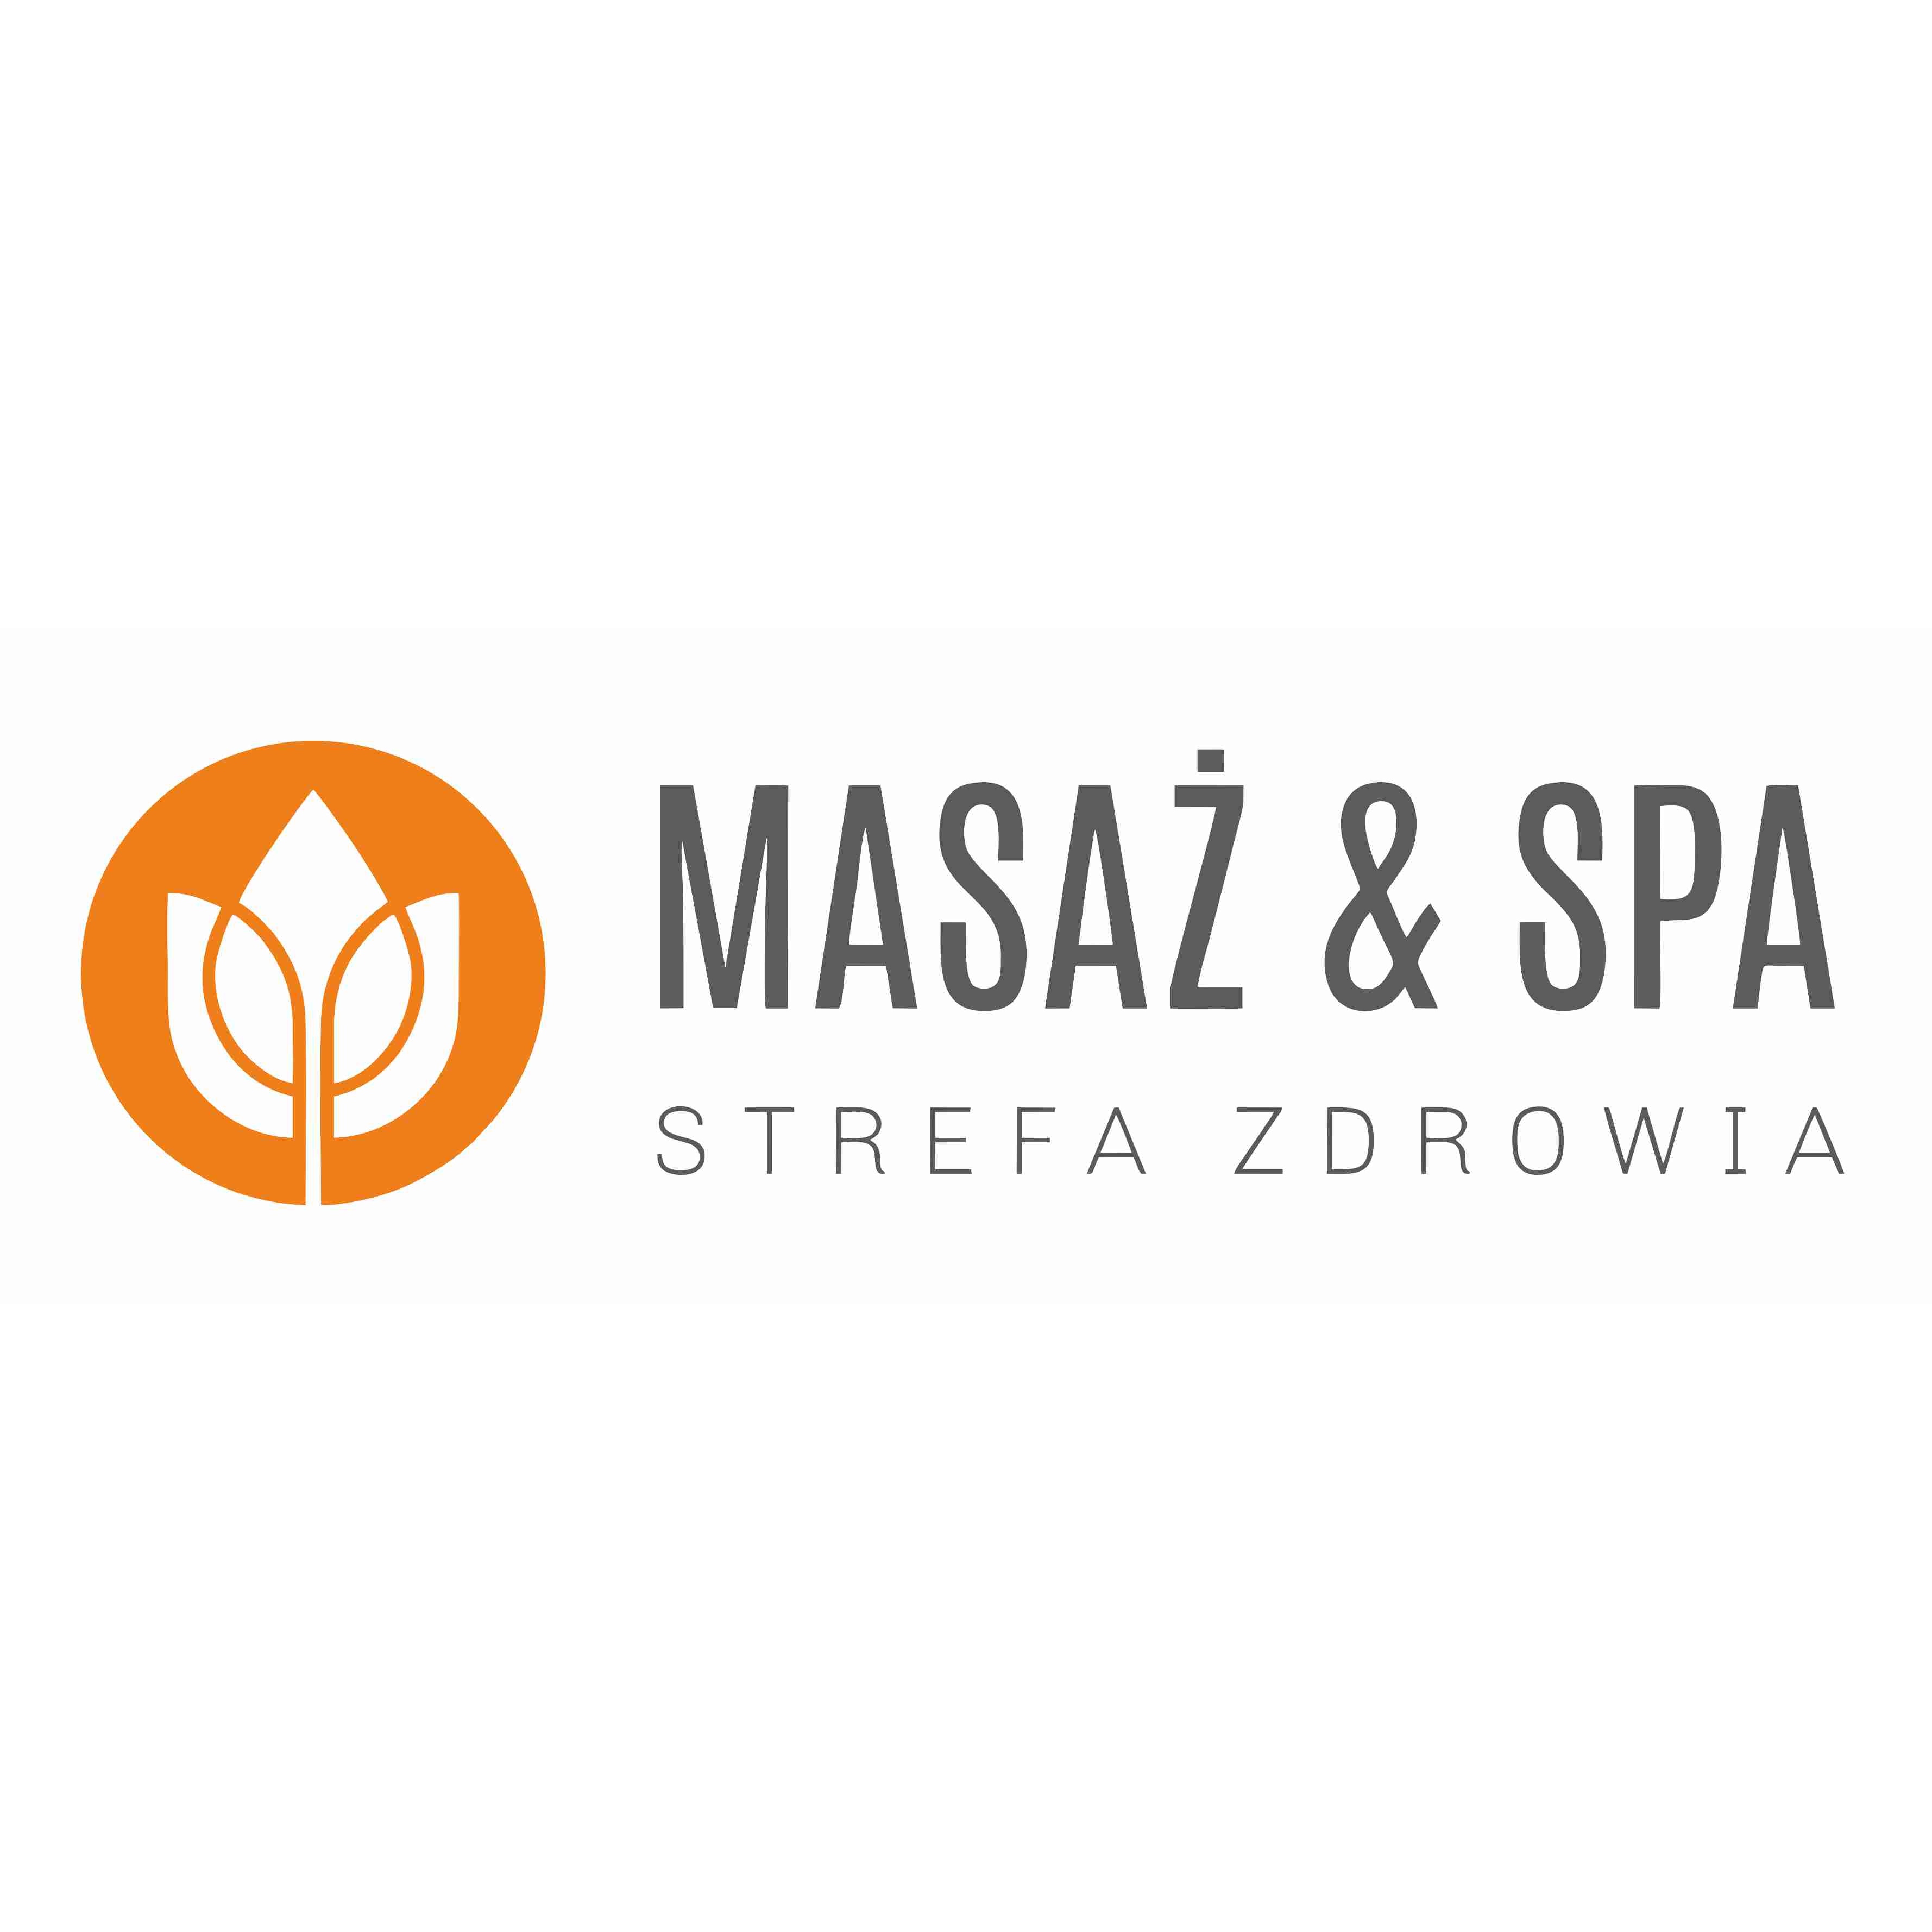 aktualność: Gabinet masażu - Masaż & Spa - Strefa Zdrowia nowym partnerem programu Grodziska Karta Mieszkańca